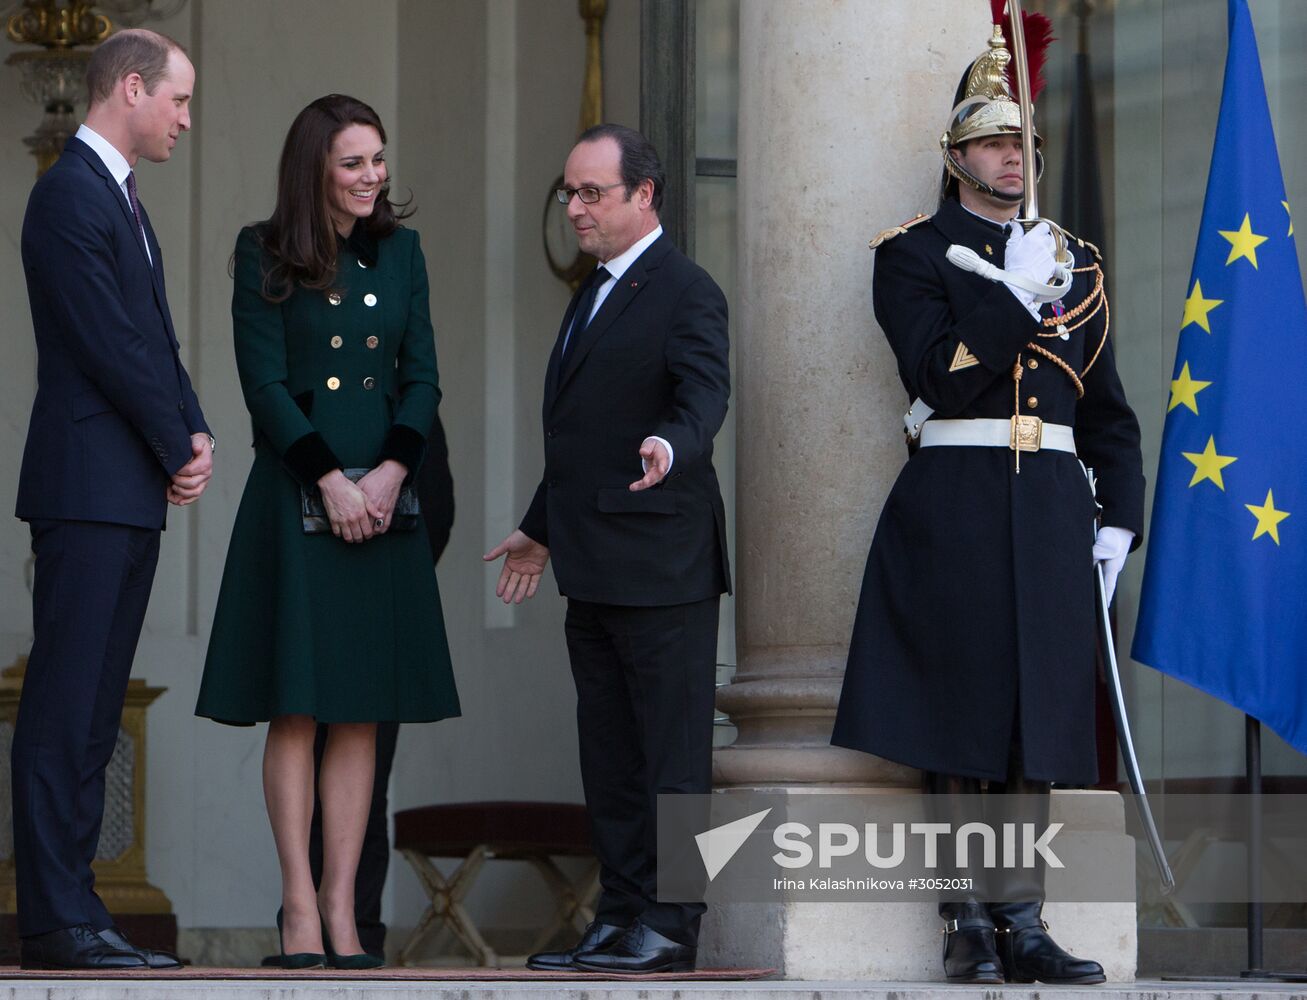 Prince William and his wife visit Palais de l'Elysée